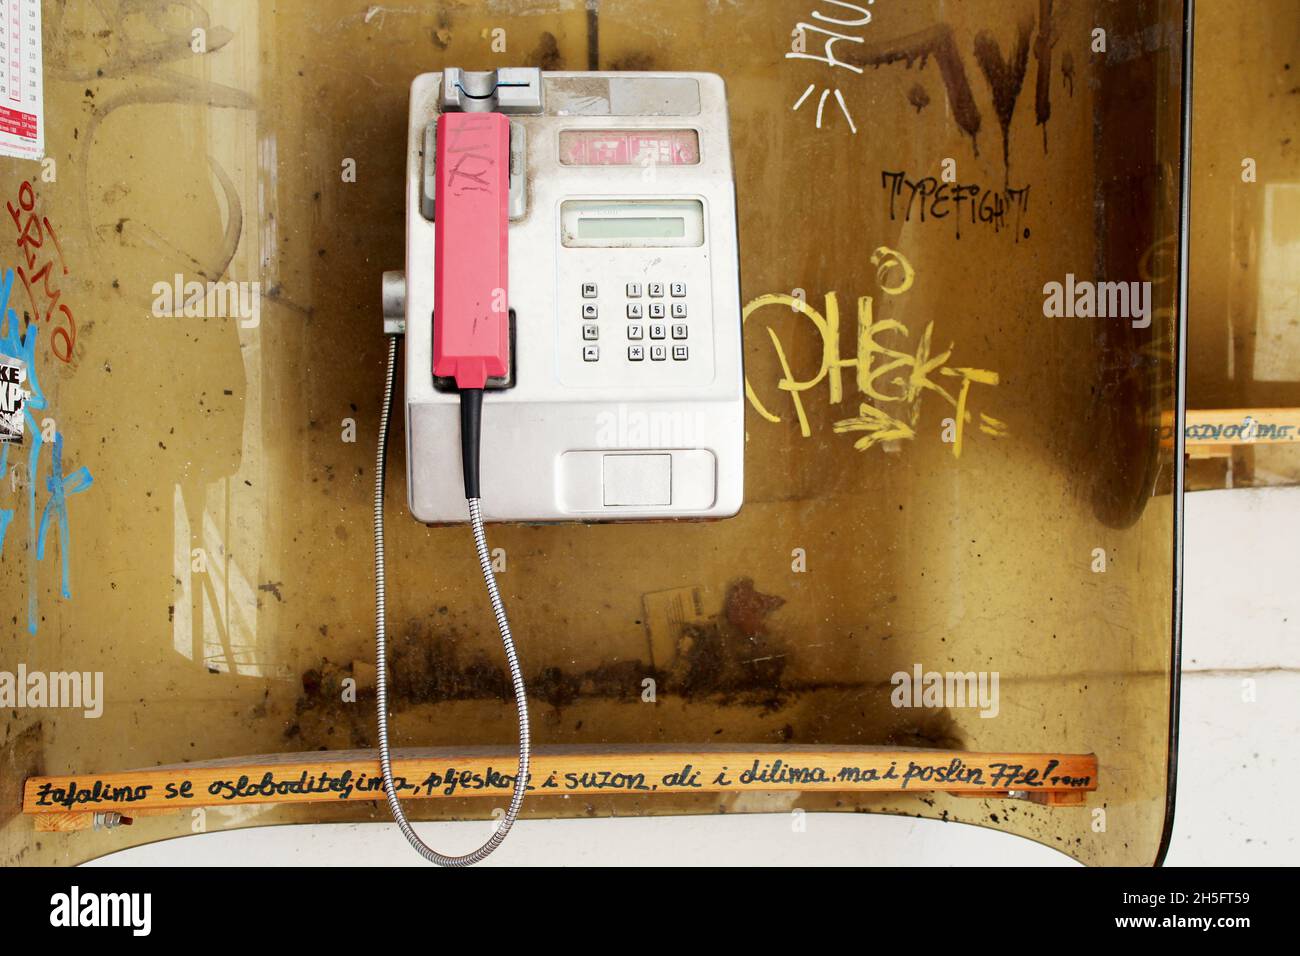 Öffentliche, offene Telefonzelle, die mit Graffiti verschmiert ist. Stock Photo